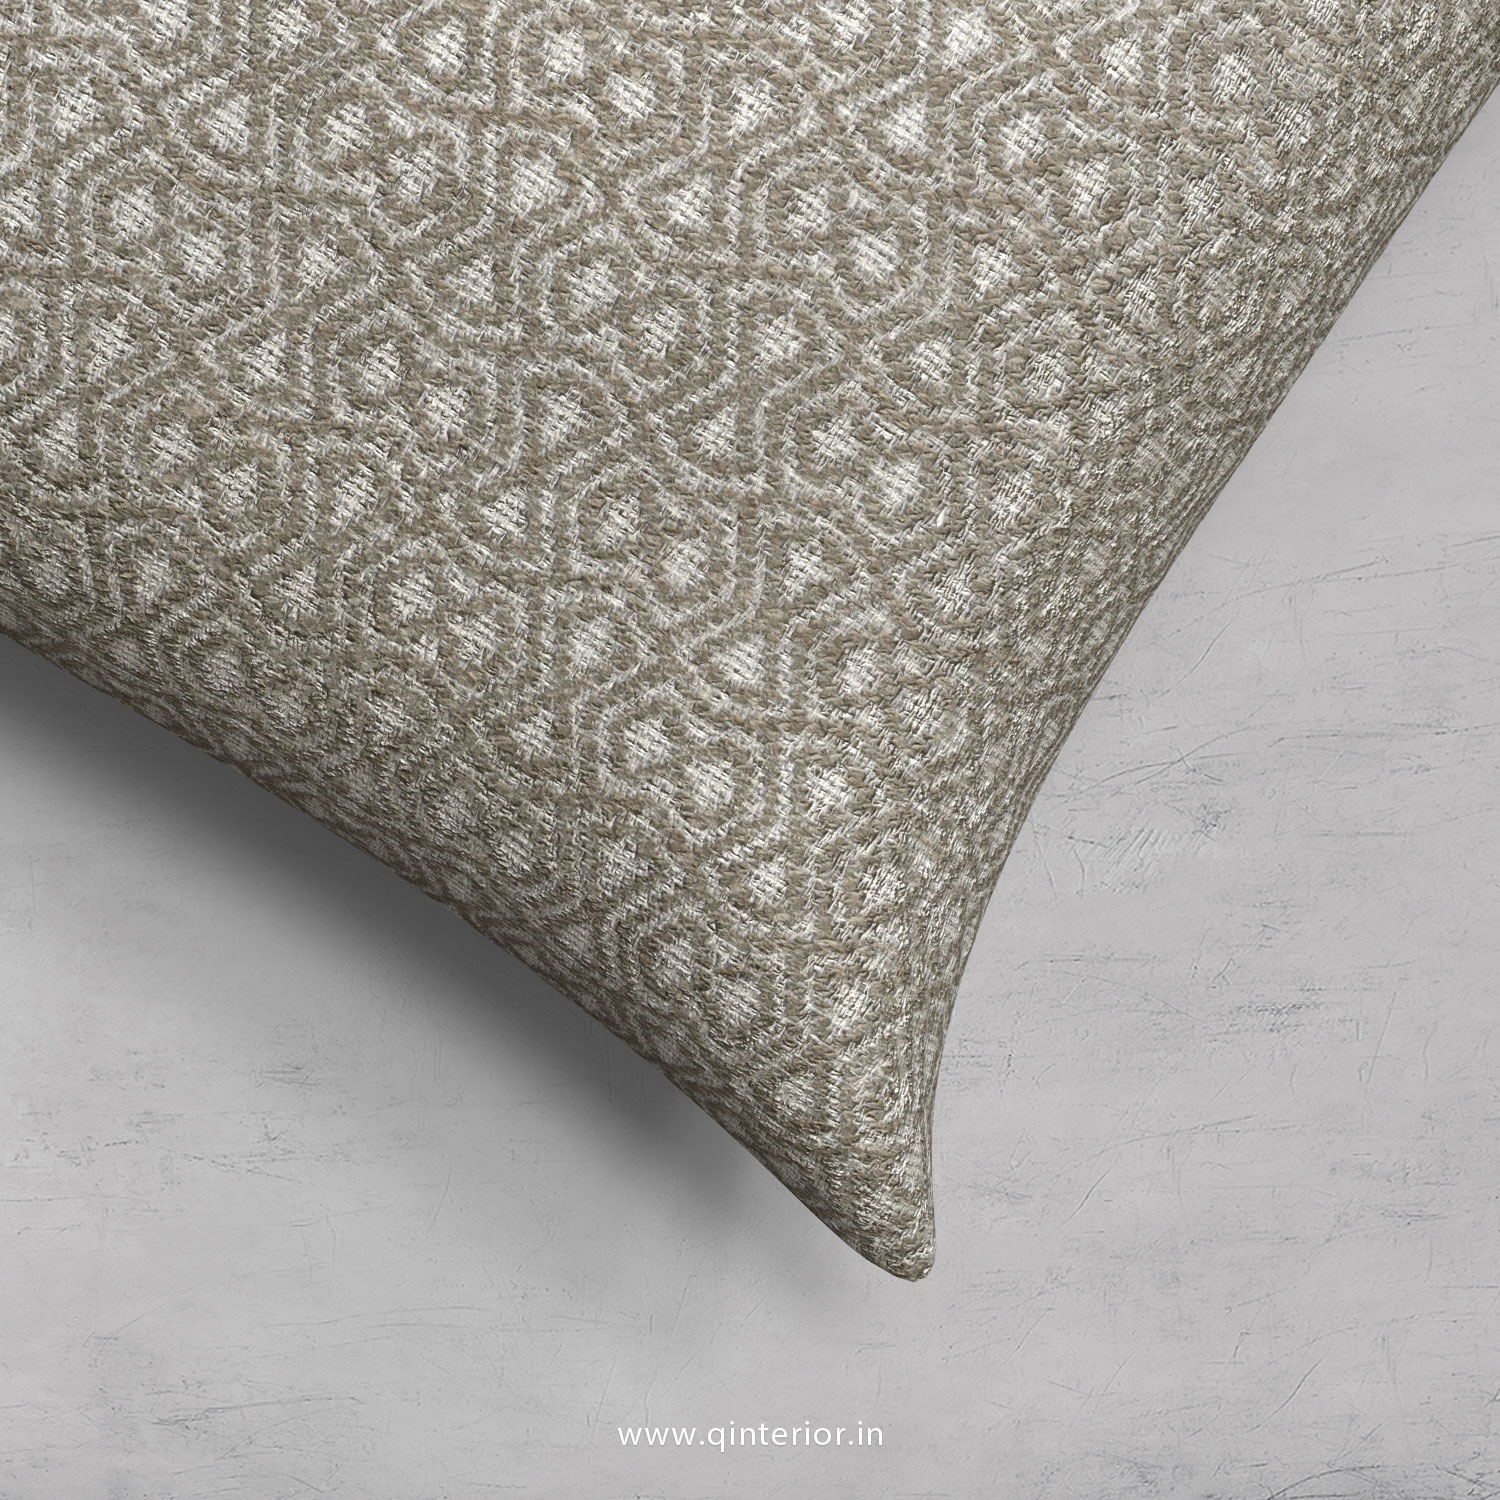 Cushion With Cushion Cover in Jacquard - CUS001 JQ37